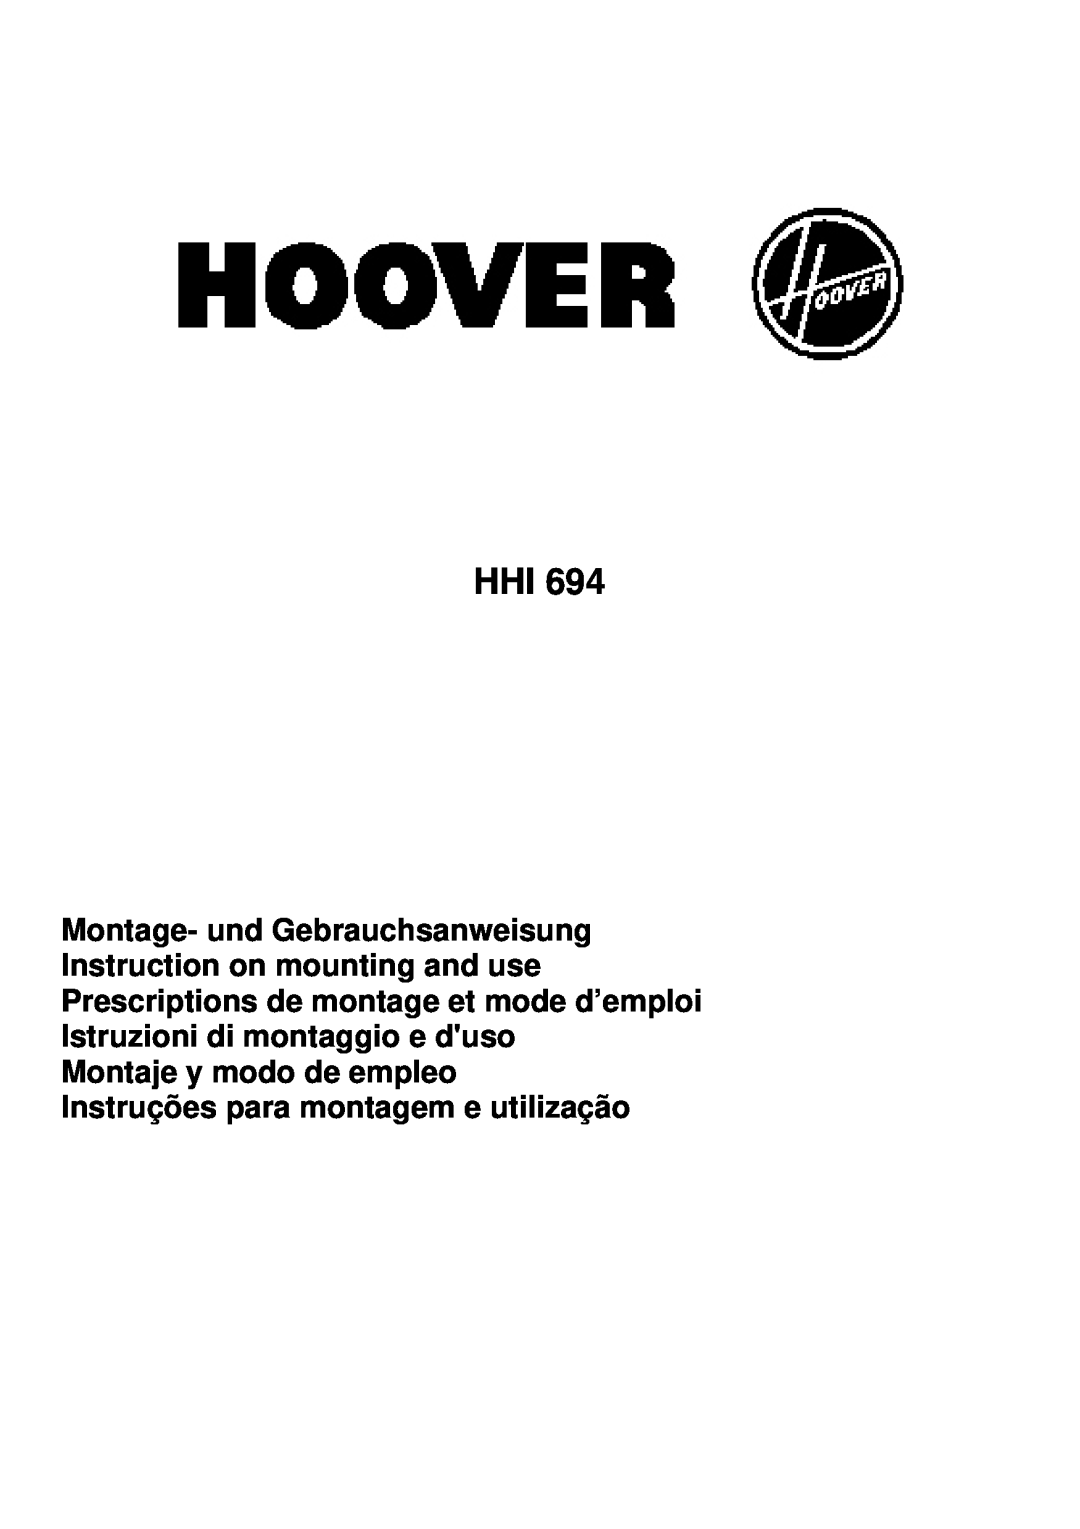 Hoover HHI 694 manual Montaje y modo de empleo Instruções para montagem e utilização 